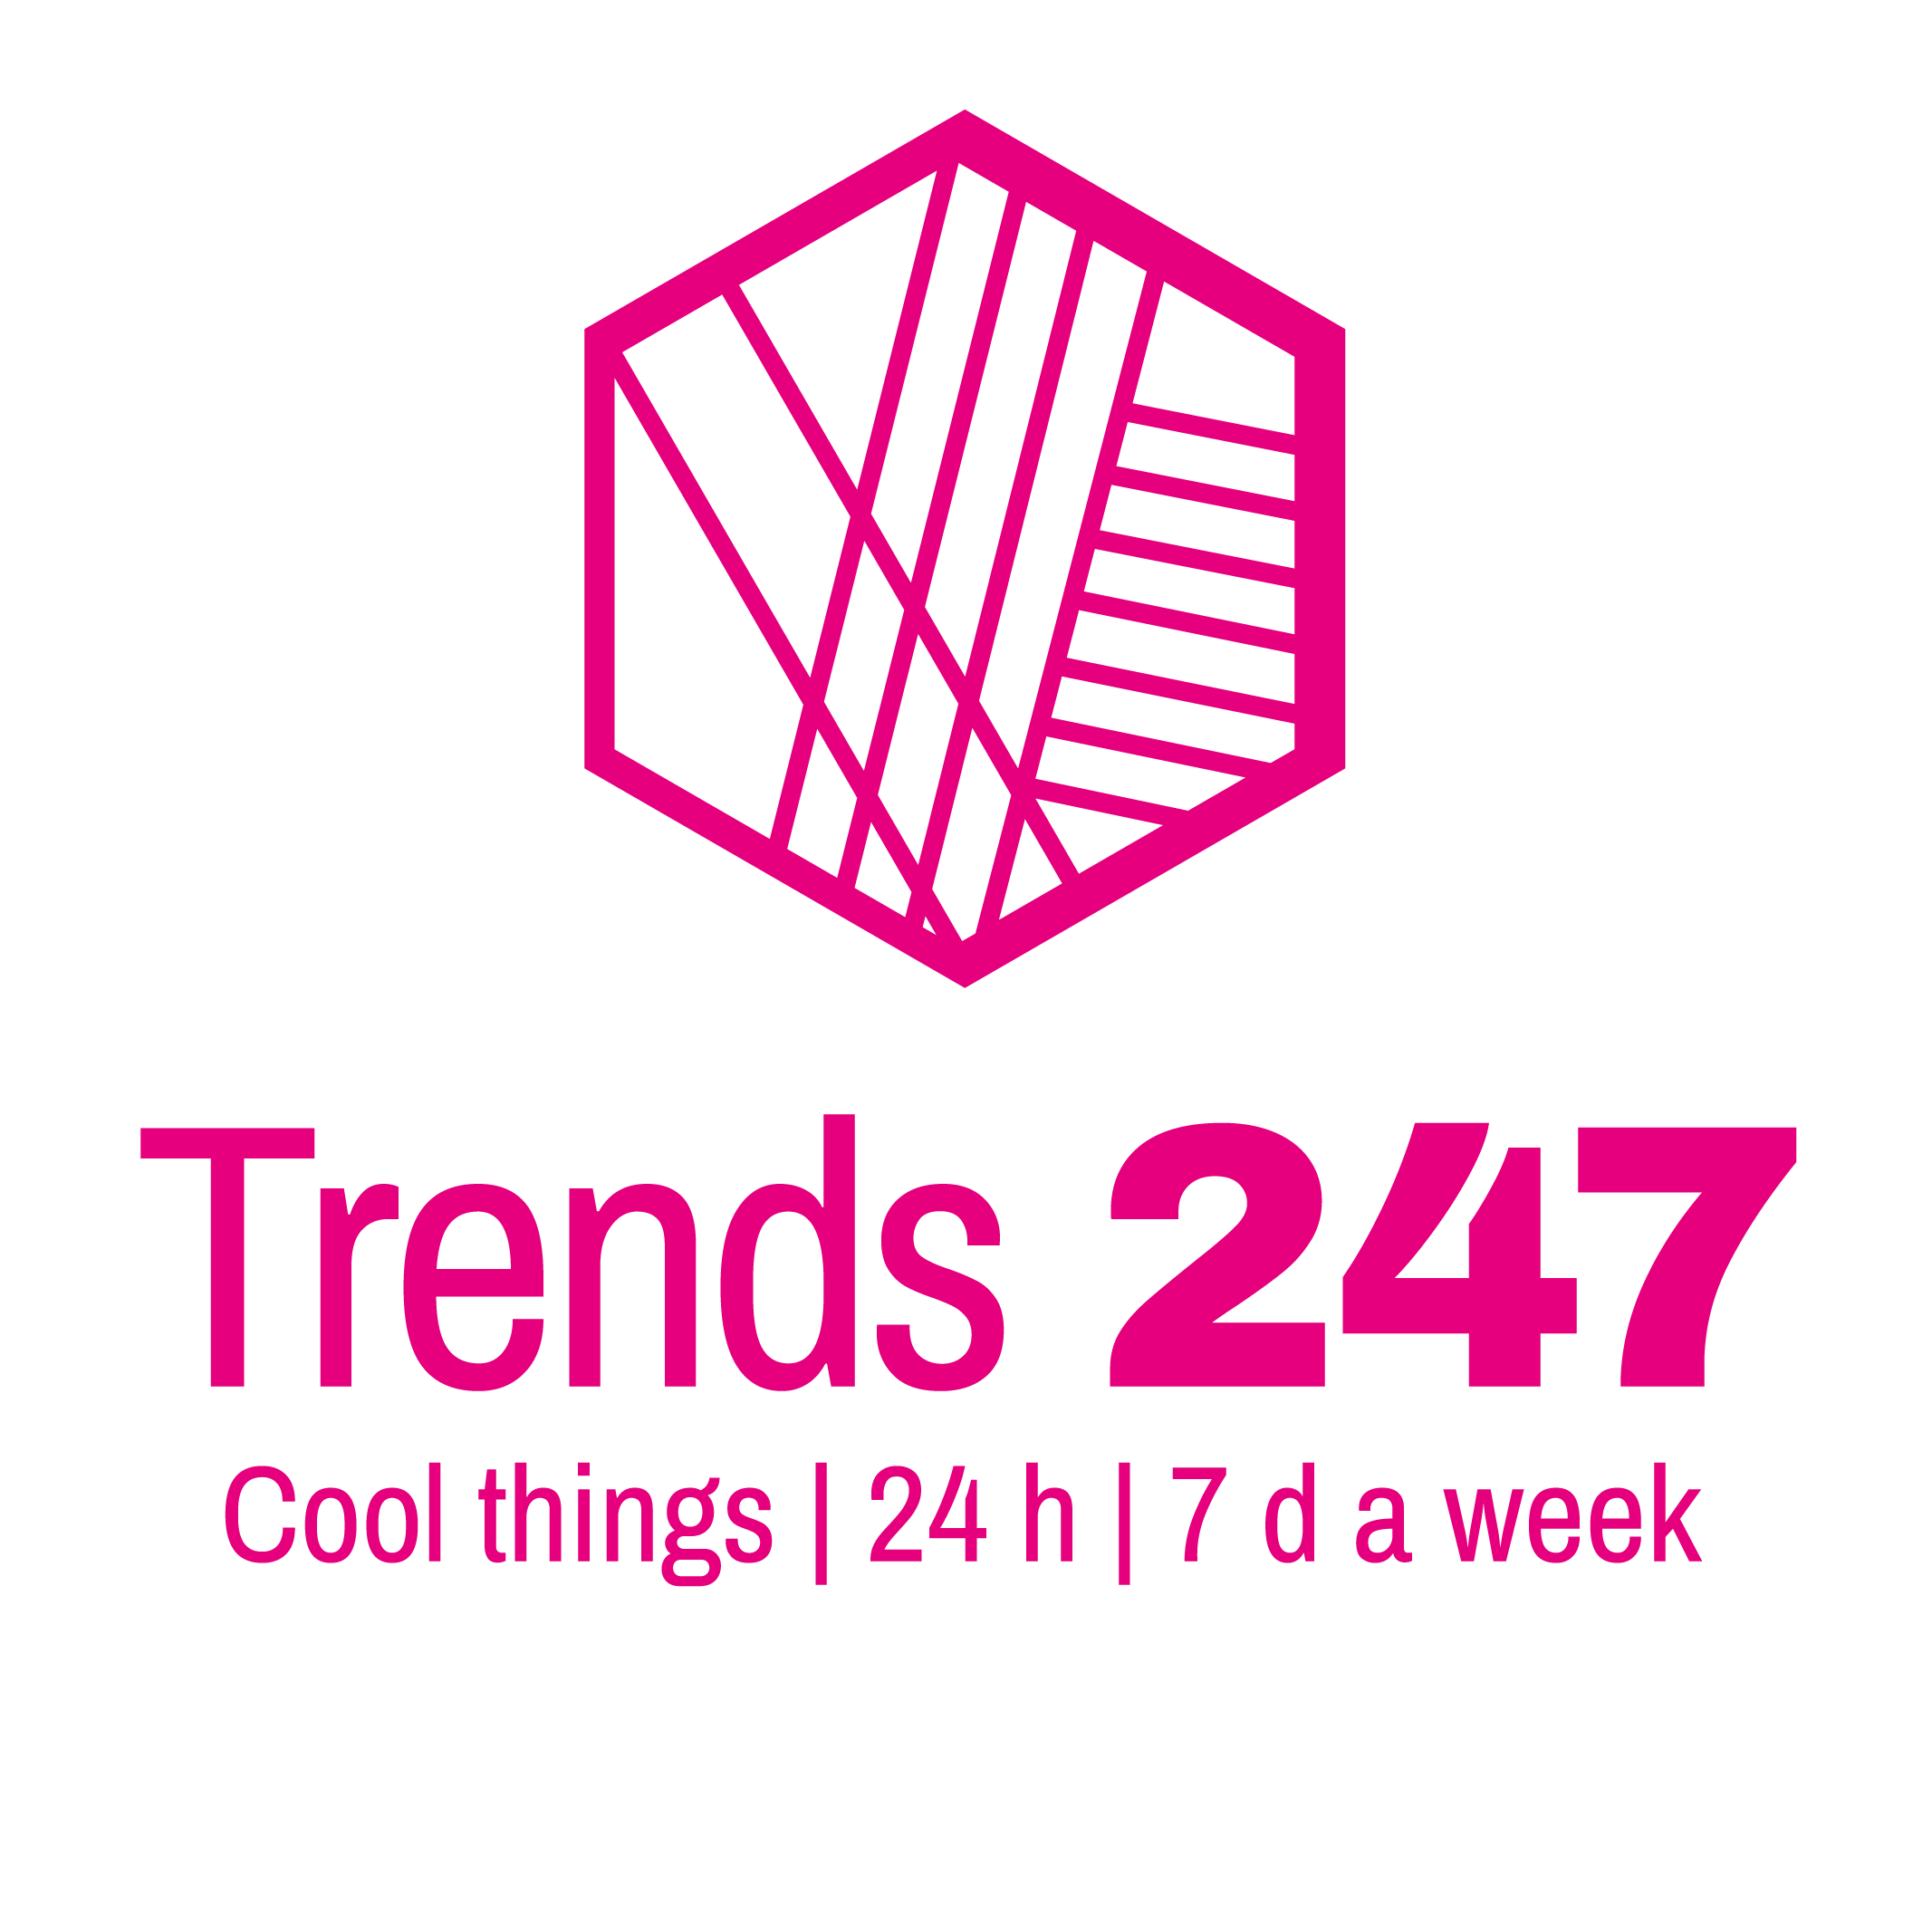 (c) Trends247.com